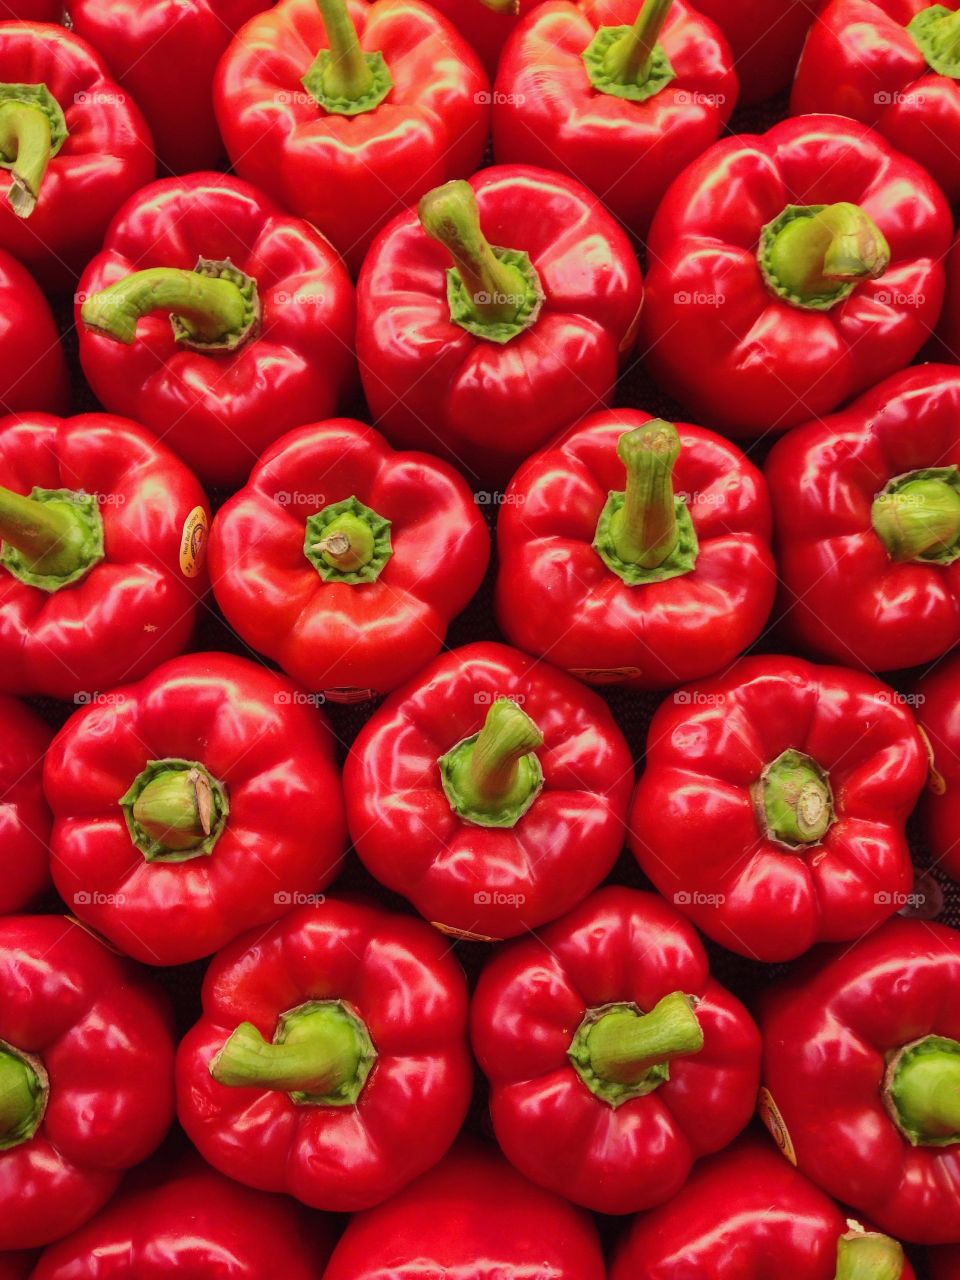 Full frame of red bell pepper